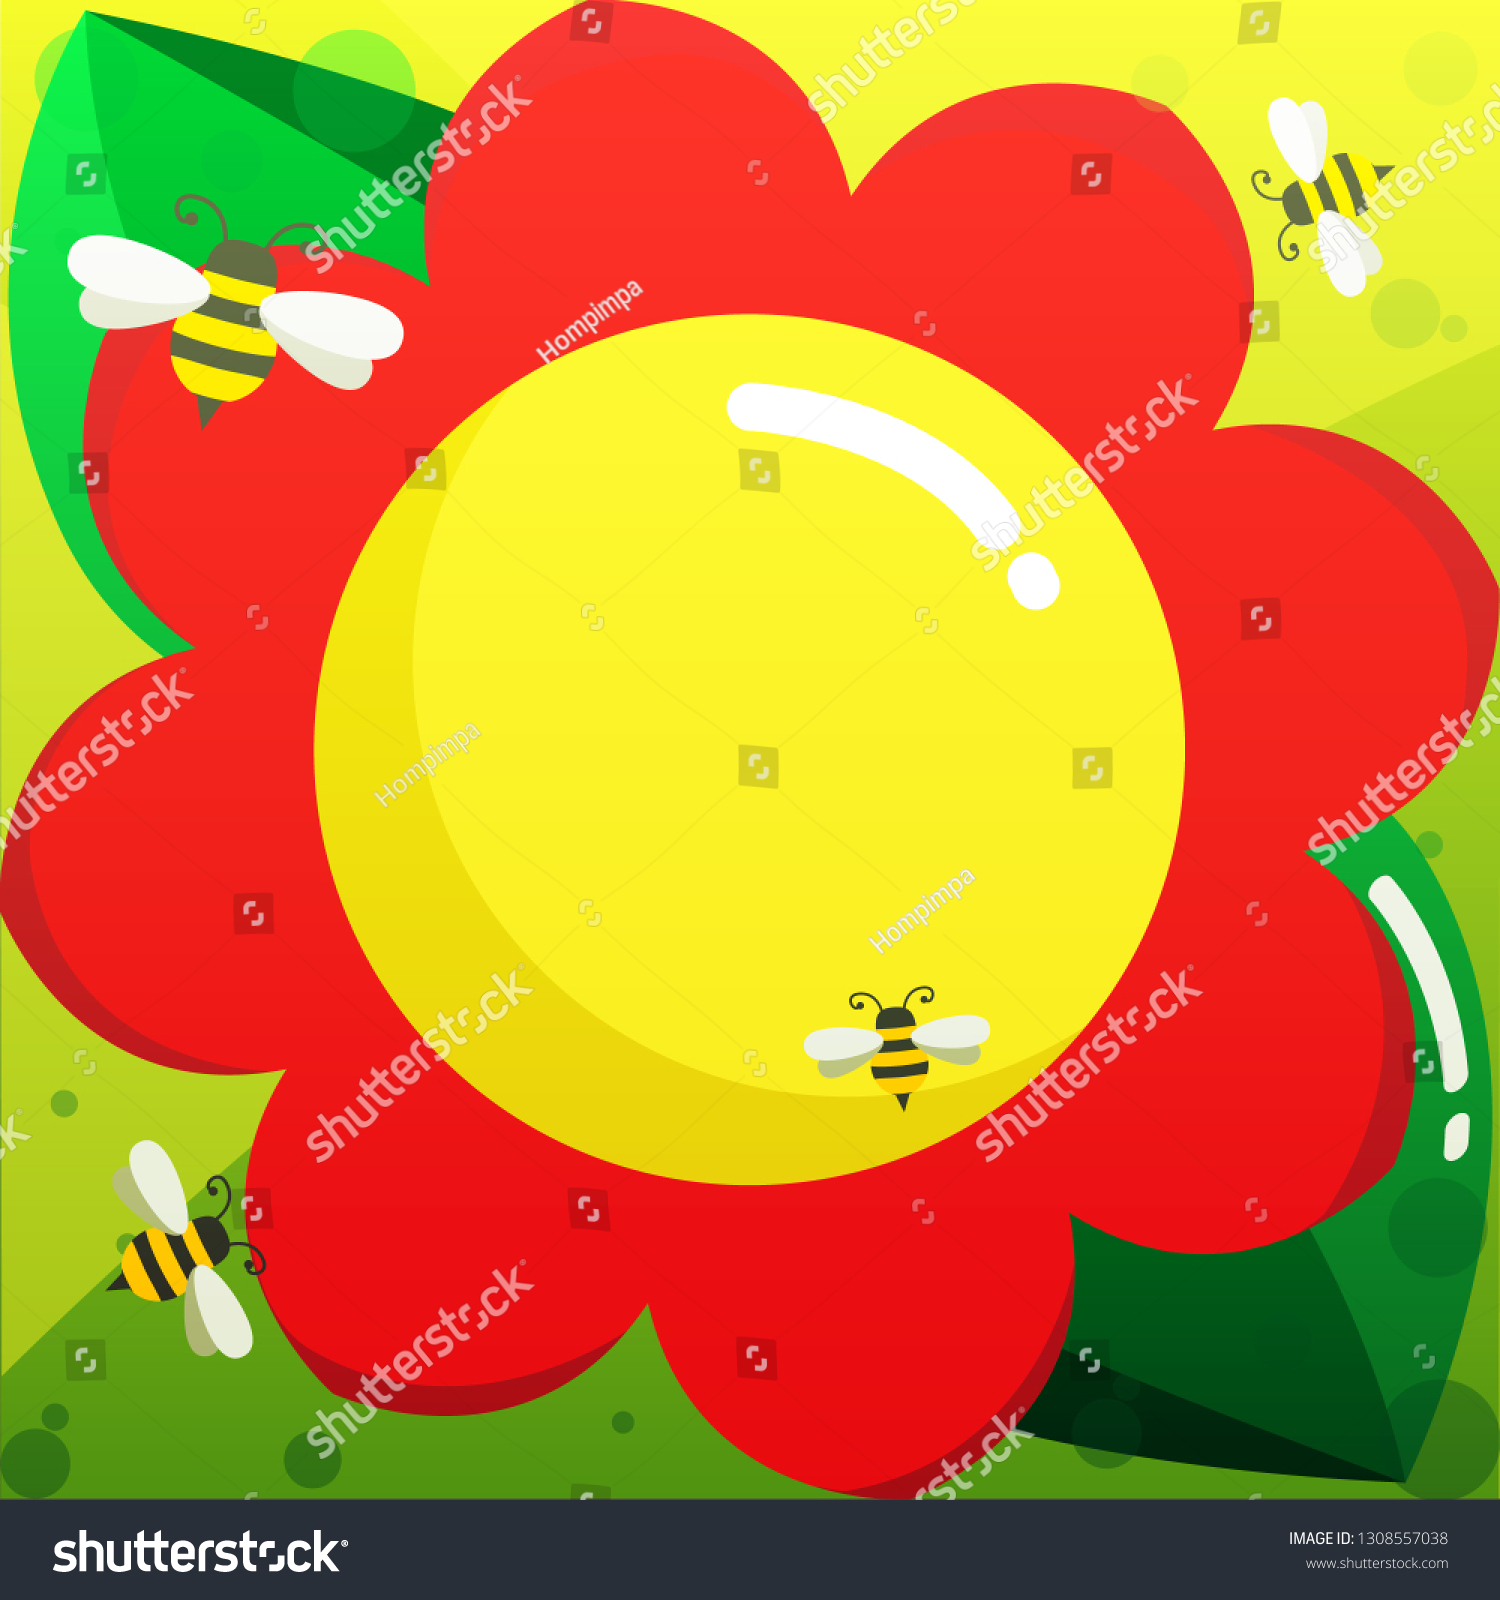 19+ Gambar Ilustrasi Bunga Matahari - Galeri Bunga HD